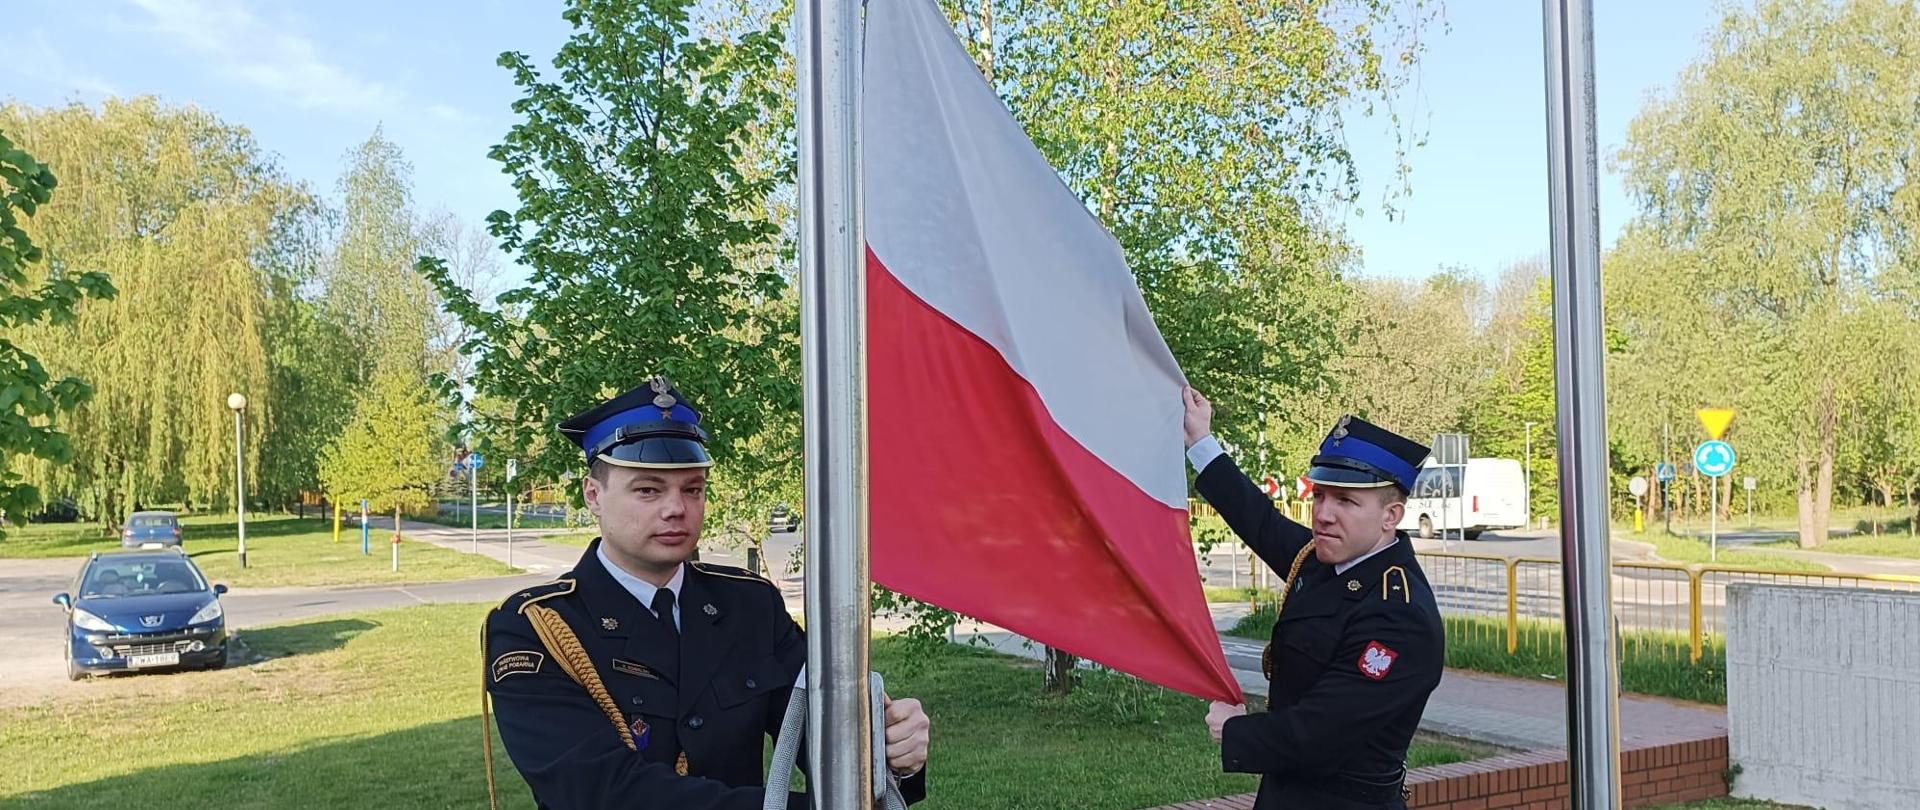 Na zdjęciu widać dwóch strażaków w umundurowaniu reprezentacyjnym wieszających flagę państwową na maszcie znajdującym się przed Komendą Powiatową PSP w Wałczu 